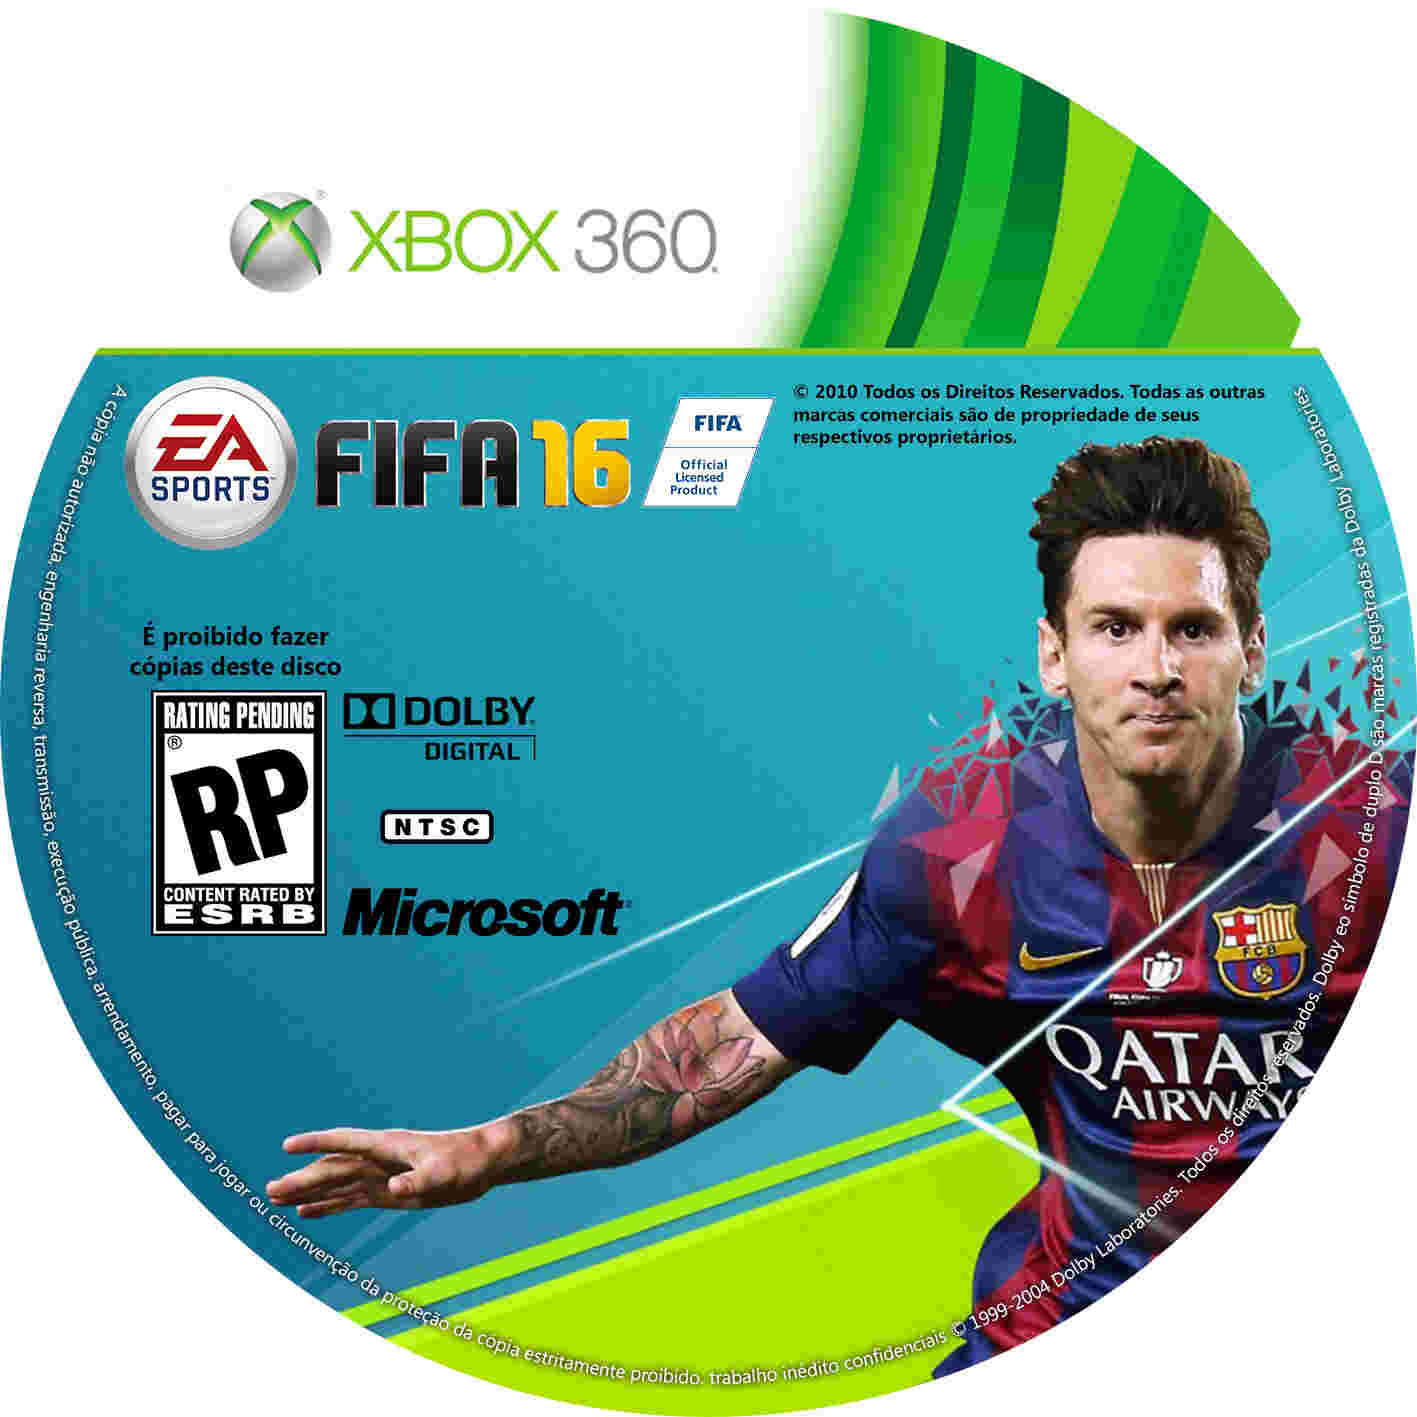 Диски fifa. Игры на Xbox 360 FIFA. Диски на иксбокс 360 ФИФА. Диски для Xbox 360 FIFA 22. ФИФА 16 диск на иксбокс 360.